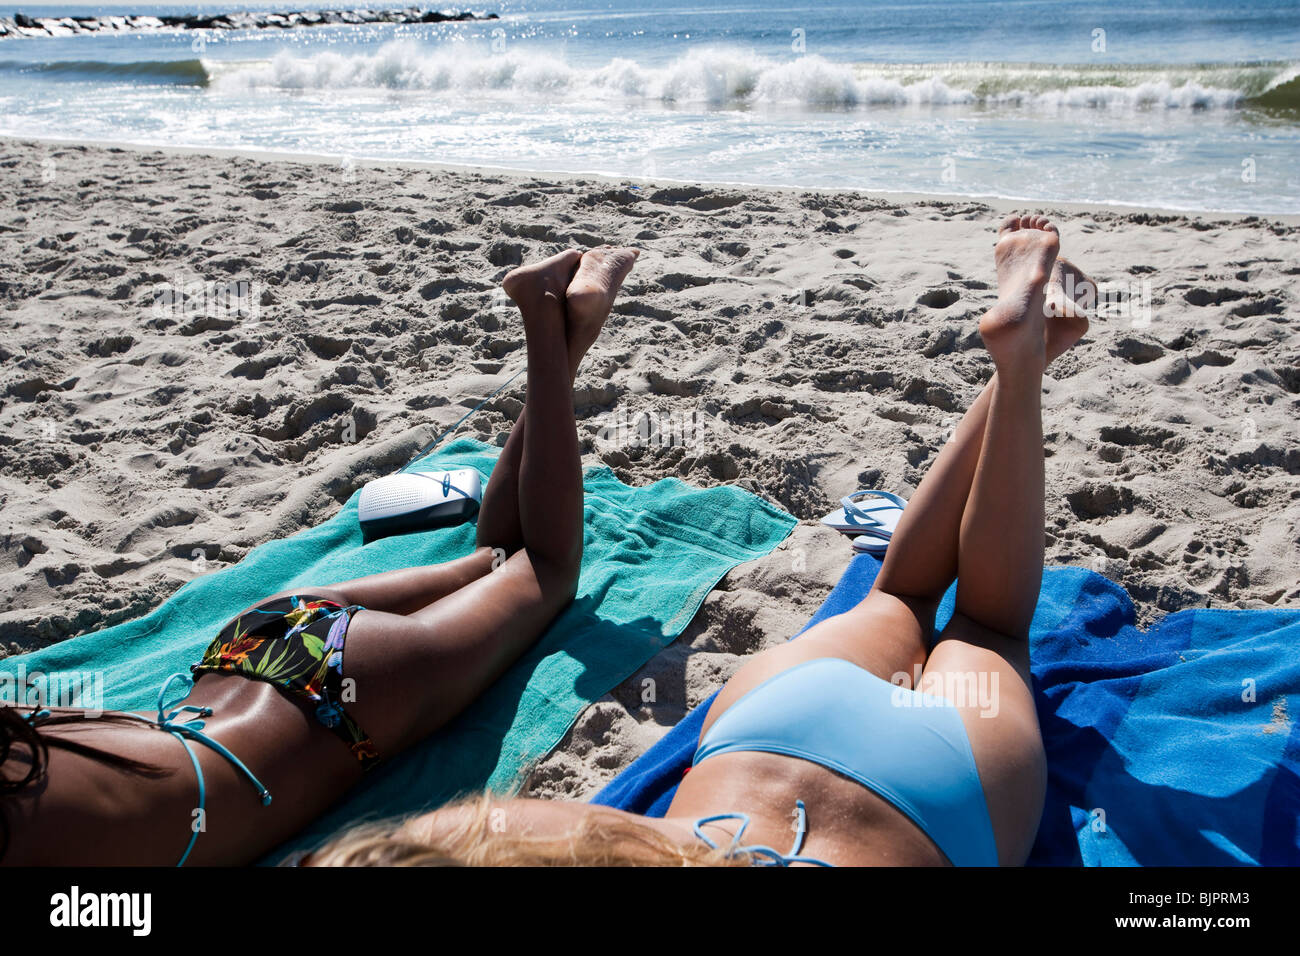 Mujeres tomando sol de espalda fotografías e imágenes de alta resolución -  Página 2 - Alamy